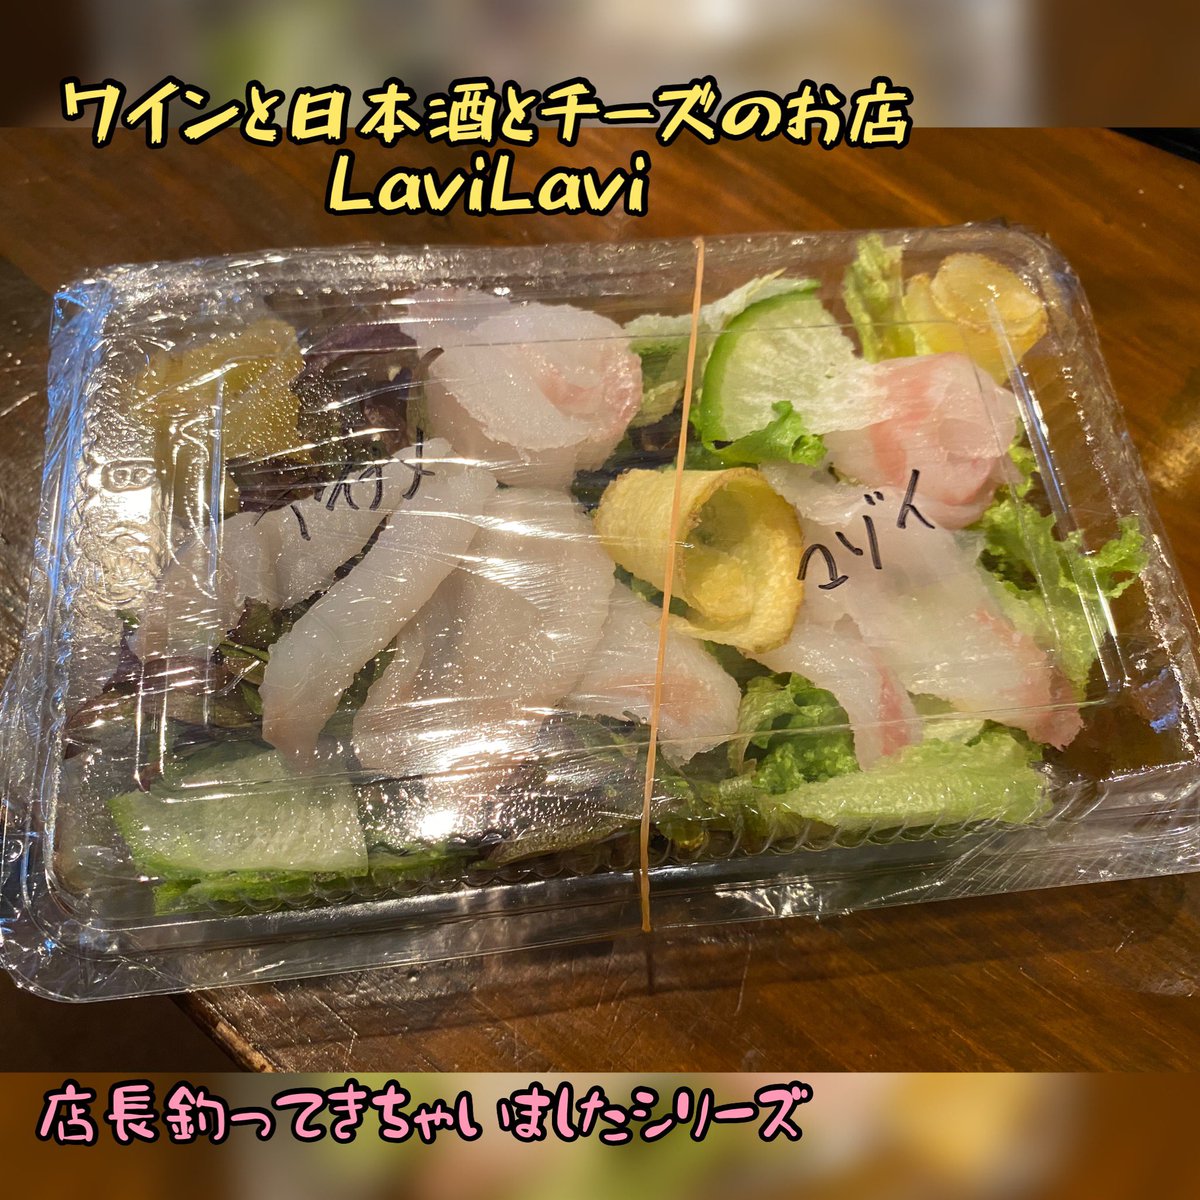 ワインと日本酒とチーズのお店lavilavi Lavilavi0602 Twitter